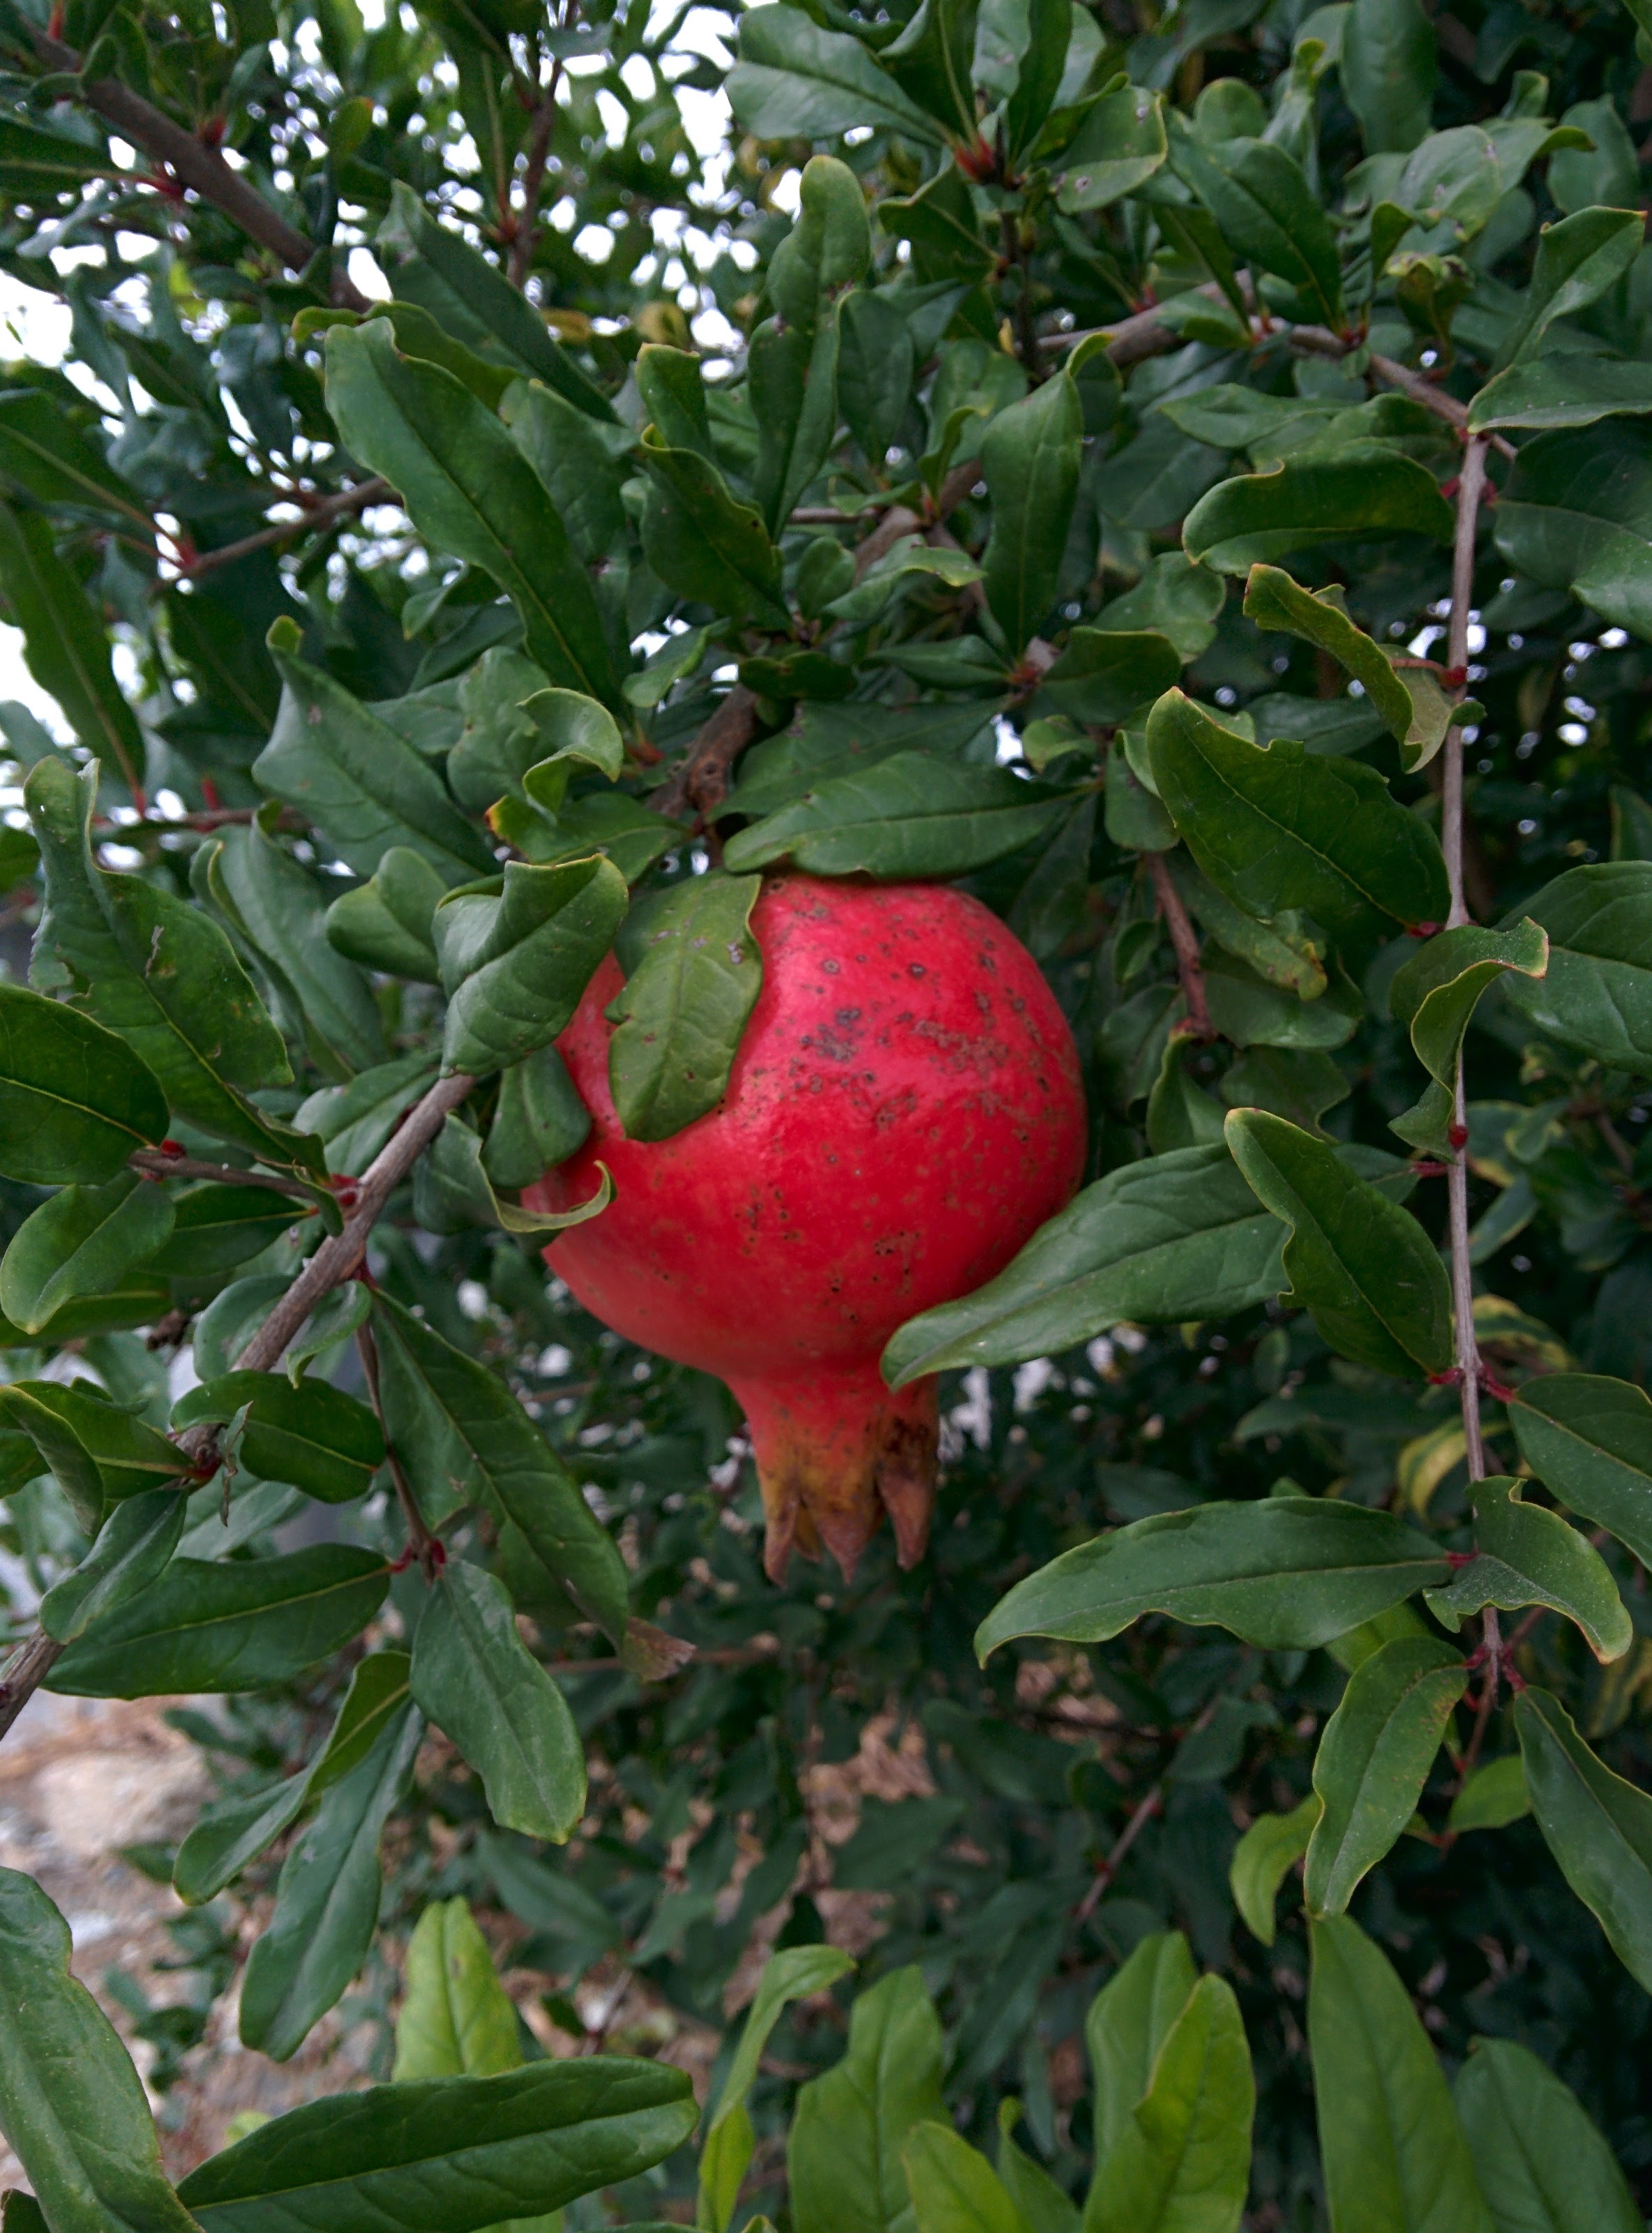 IMG_20150920_144912.jpg 빨간색 석류 열매를 맺은 키작은 석류나무